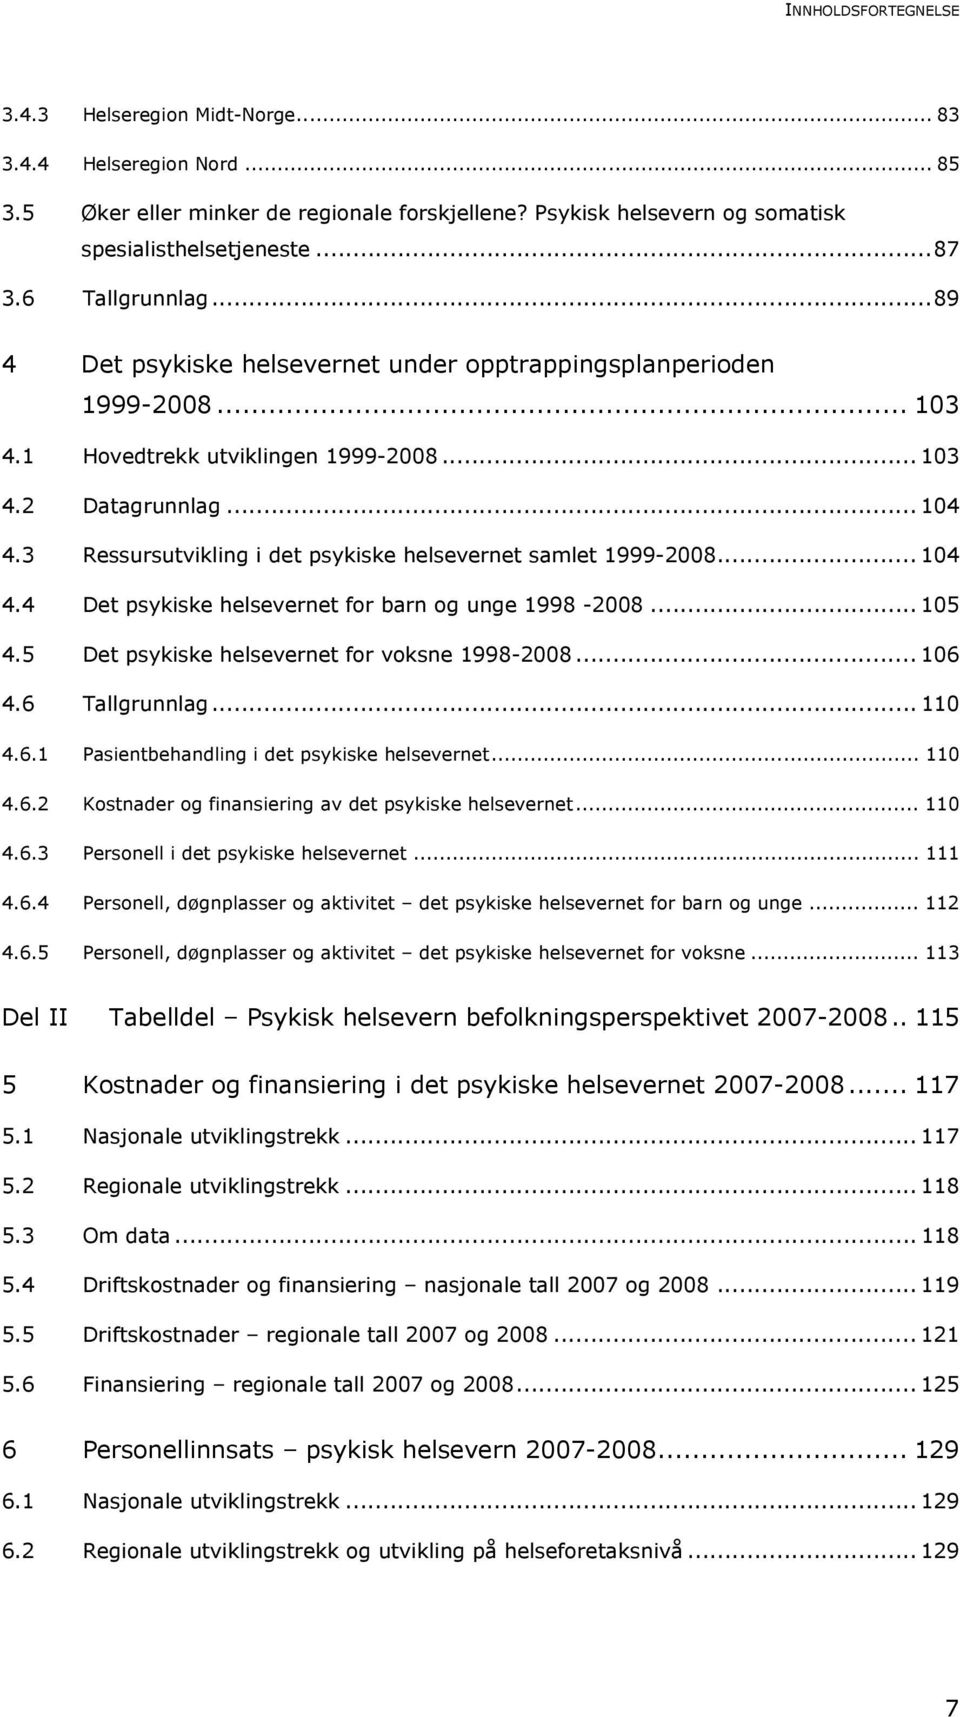 3 Ressursutvikling i det psykiske helsevernet samlet 1999-2008... 104 4.4 Det psykiske helsevernet for barn og unge 1998-2008... 105 4.5 Det psykiske helsevernet for voksne 1998-2008... 106 4.